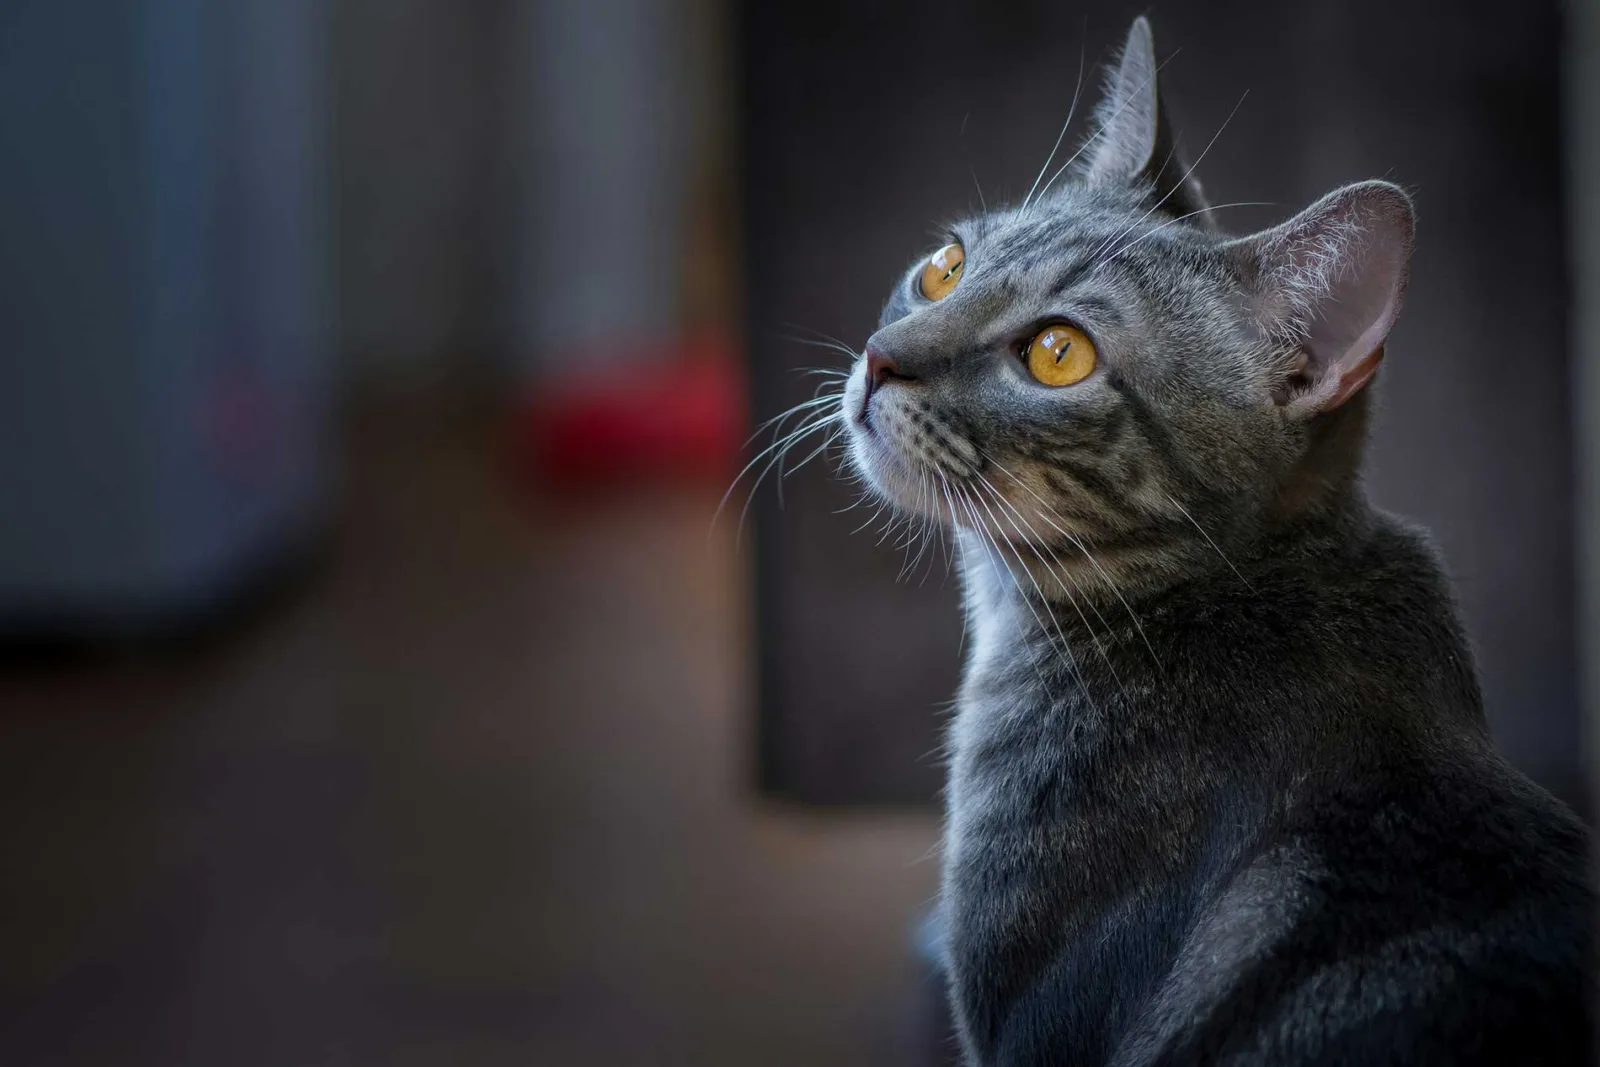 Profilansicht einer grauen Katze, die nach oben schaut. Die leuchtend orangefarbenen Augen der Katze sind auf etwas über ihr gerichtet, und ihr aufmerksamer Gesichtsausdruck hebt ihre langen Schnurrhaare hervor, die sich anmutig von ihrer Schnauze vor einem sanft verschwommenen Hintergrund abzeichnen. Am Kinn der Katze kann man vor dem dunkleren Hintergrund ein paar kürzere Schnurrhaare erkennen.